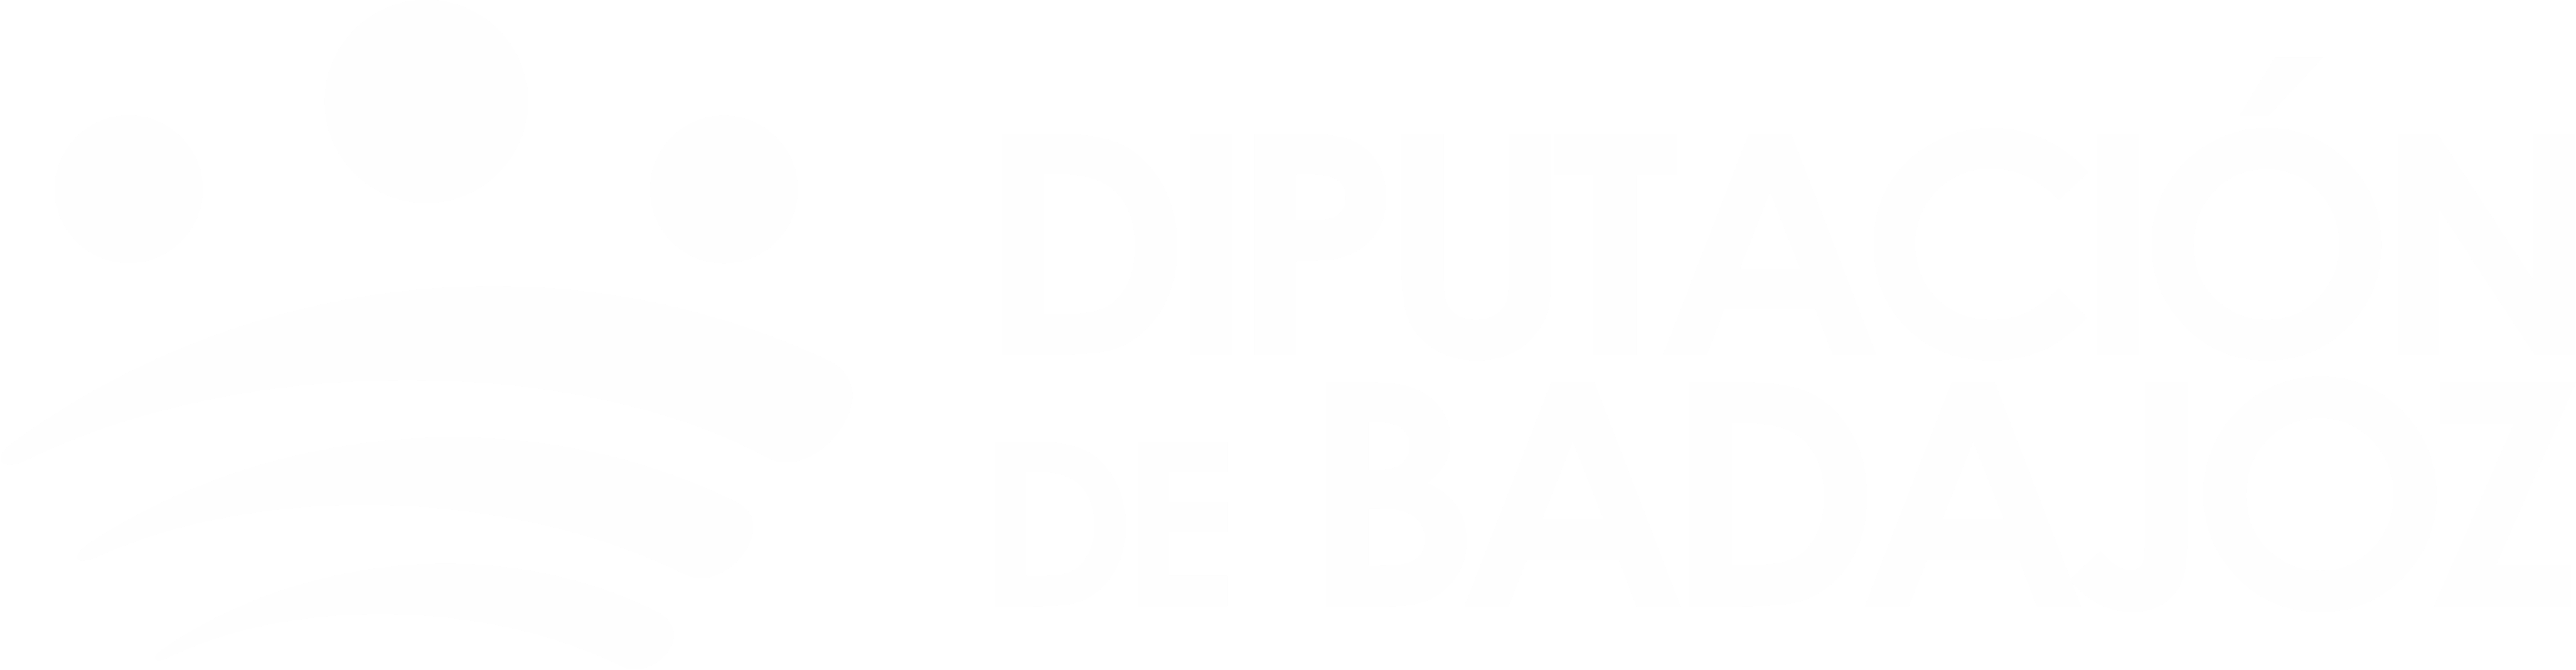 Logotipo de la Diputación Provincial de Badajoz